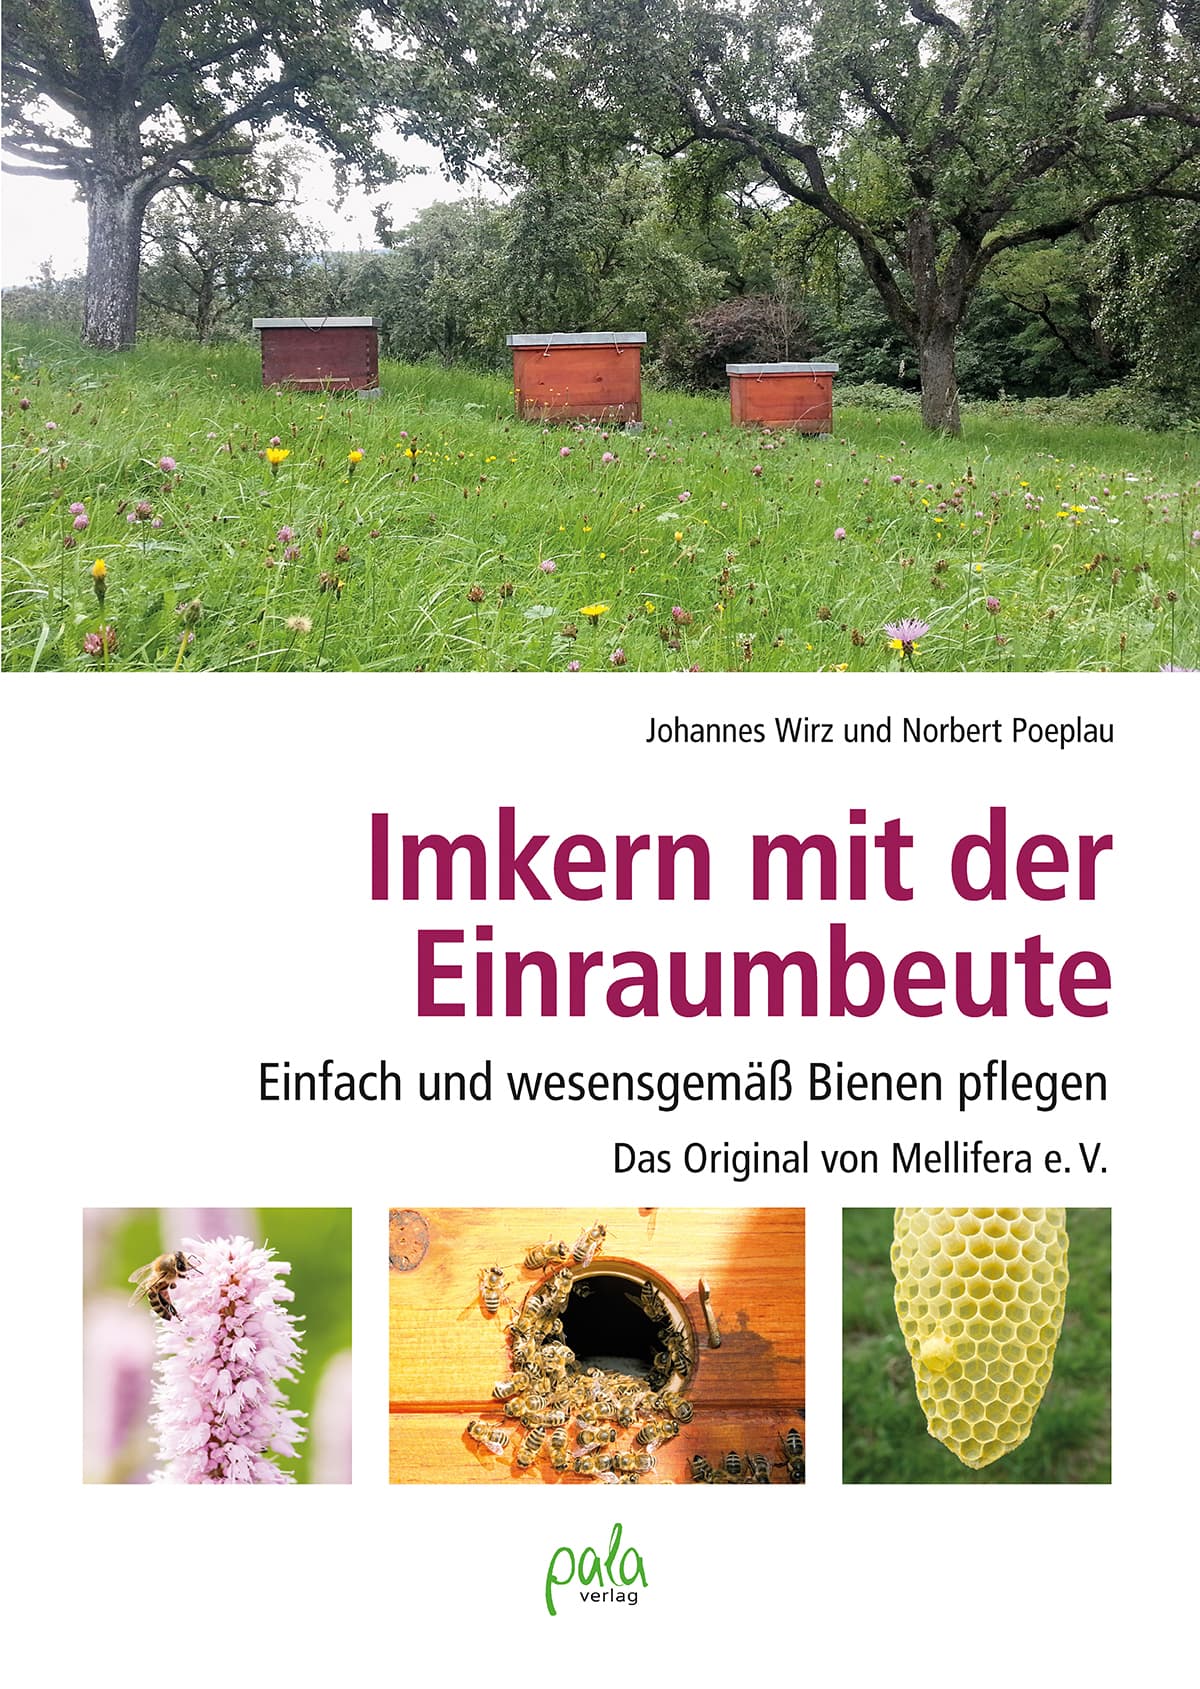 Imkern mit der Einraumbeute, das Original von Mellifera e.V., J. Wirz, N. Poeplau, pala Verlag